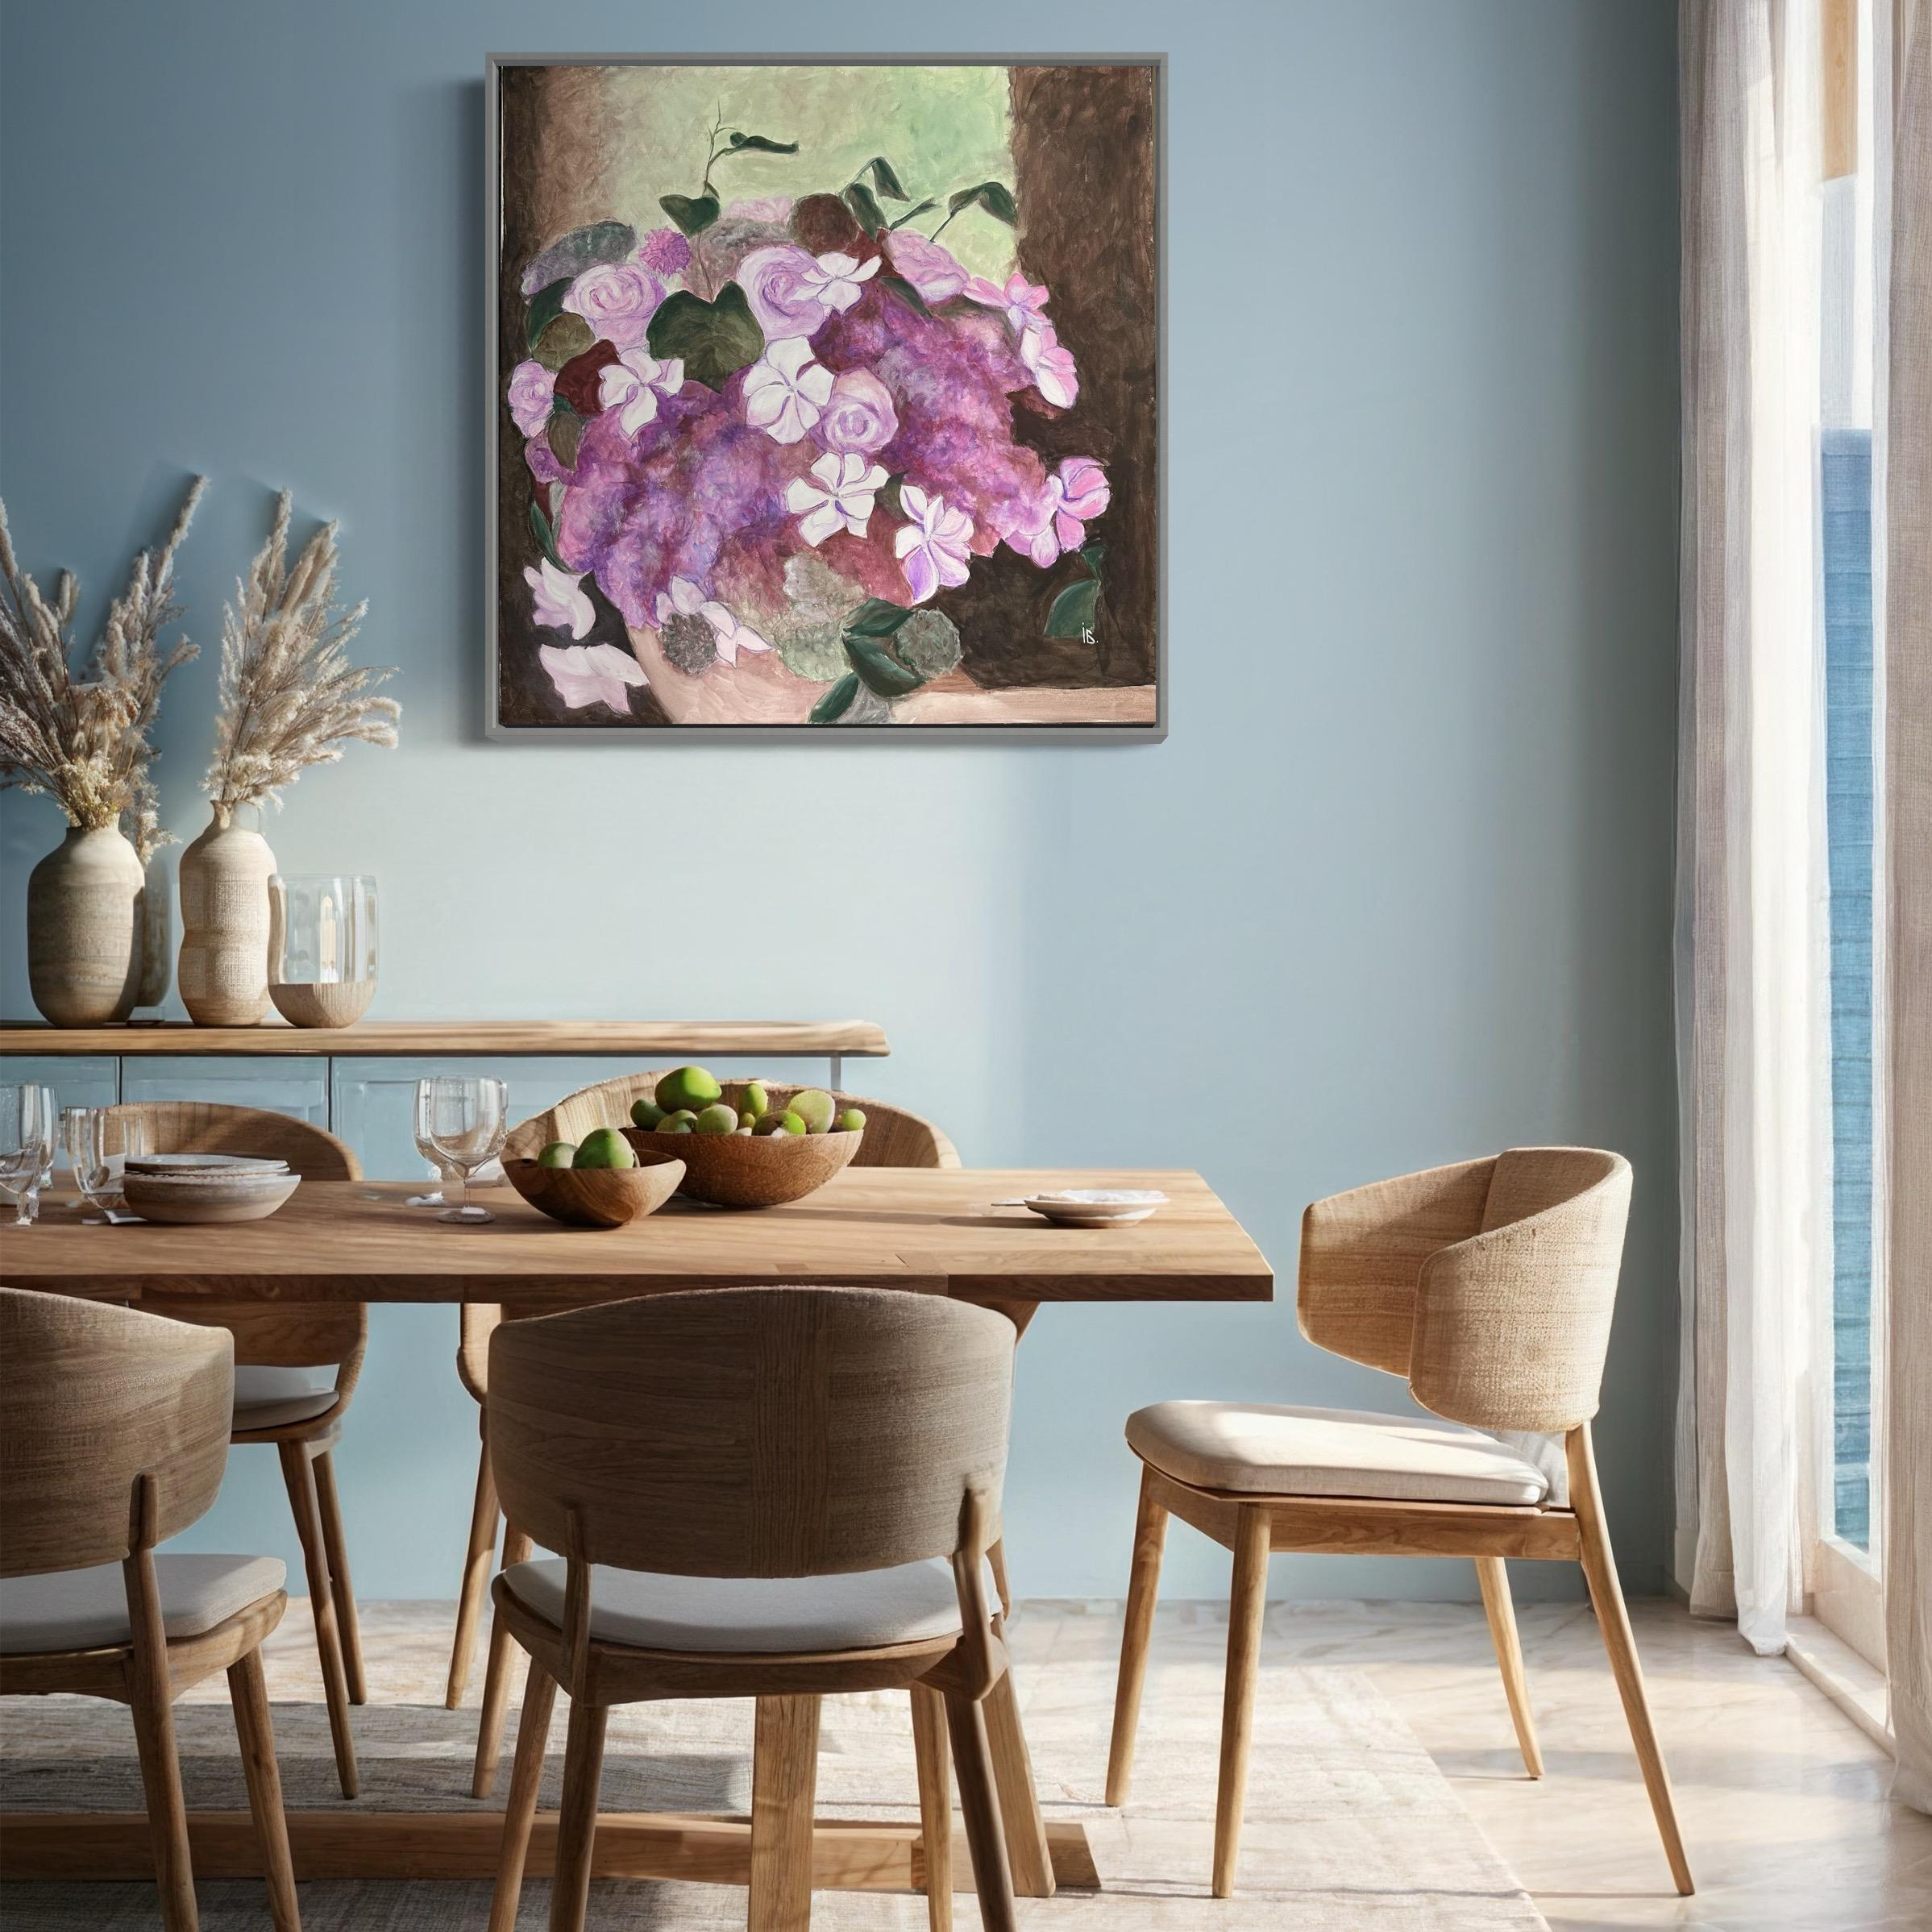 
Dieses Gemälde bietet einen Wandteppich aus Blumenpracht, eine sanfte Kaskade von Blüten, die ein zartes Zusammenspiel von Farbe und Textur offenbart. Die subtilen Farbtonverschiebungen von tiefem Violett zu zartem Rosa und die Cremigkeit von Weiß